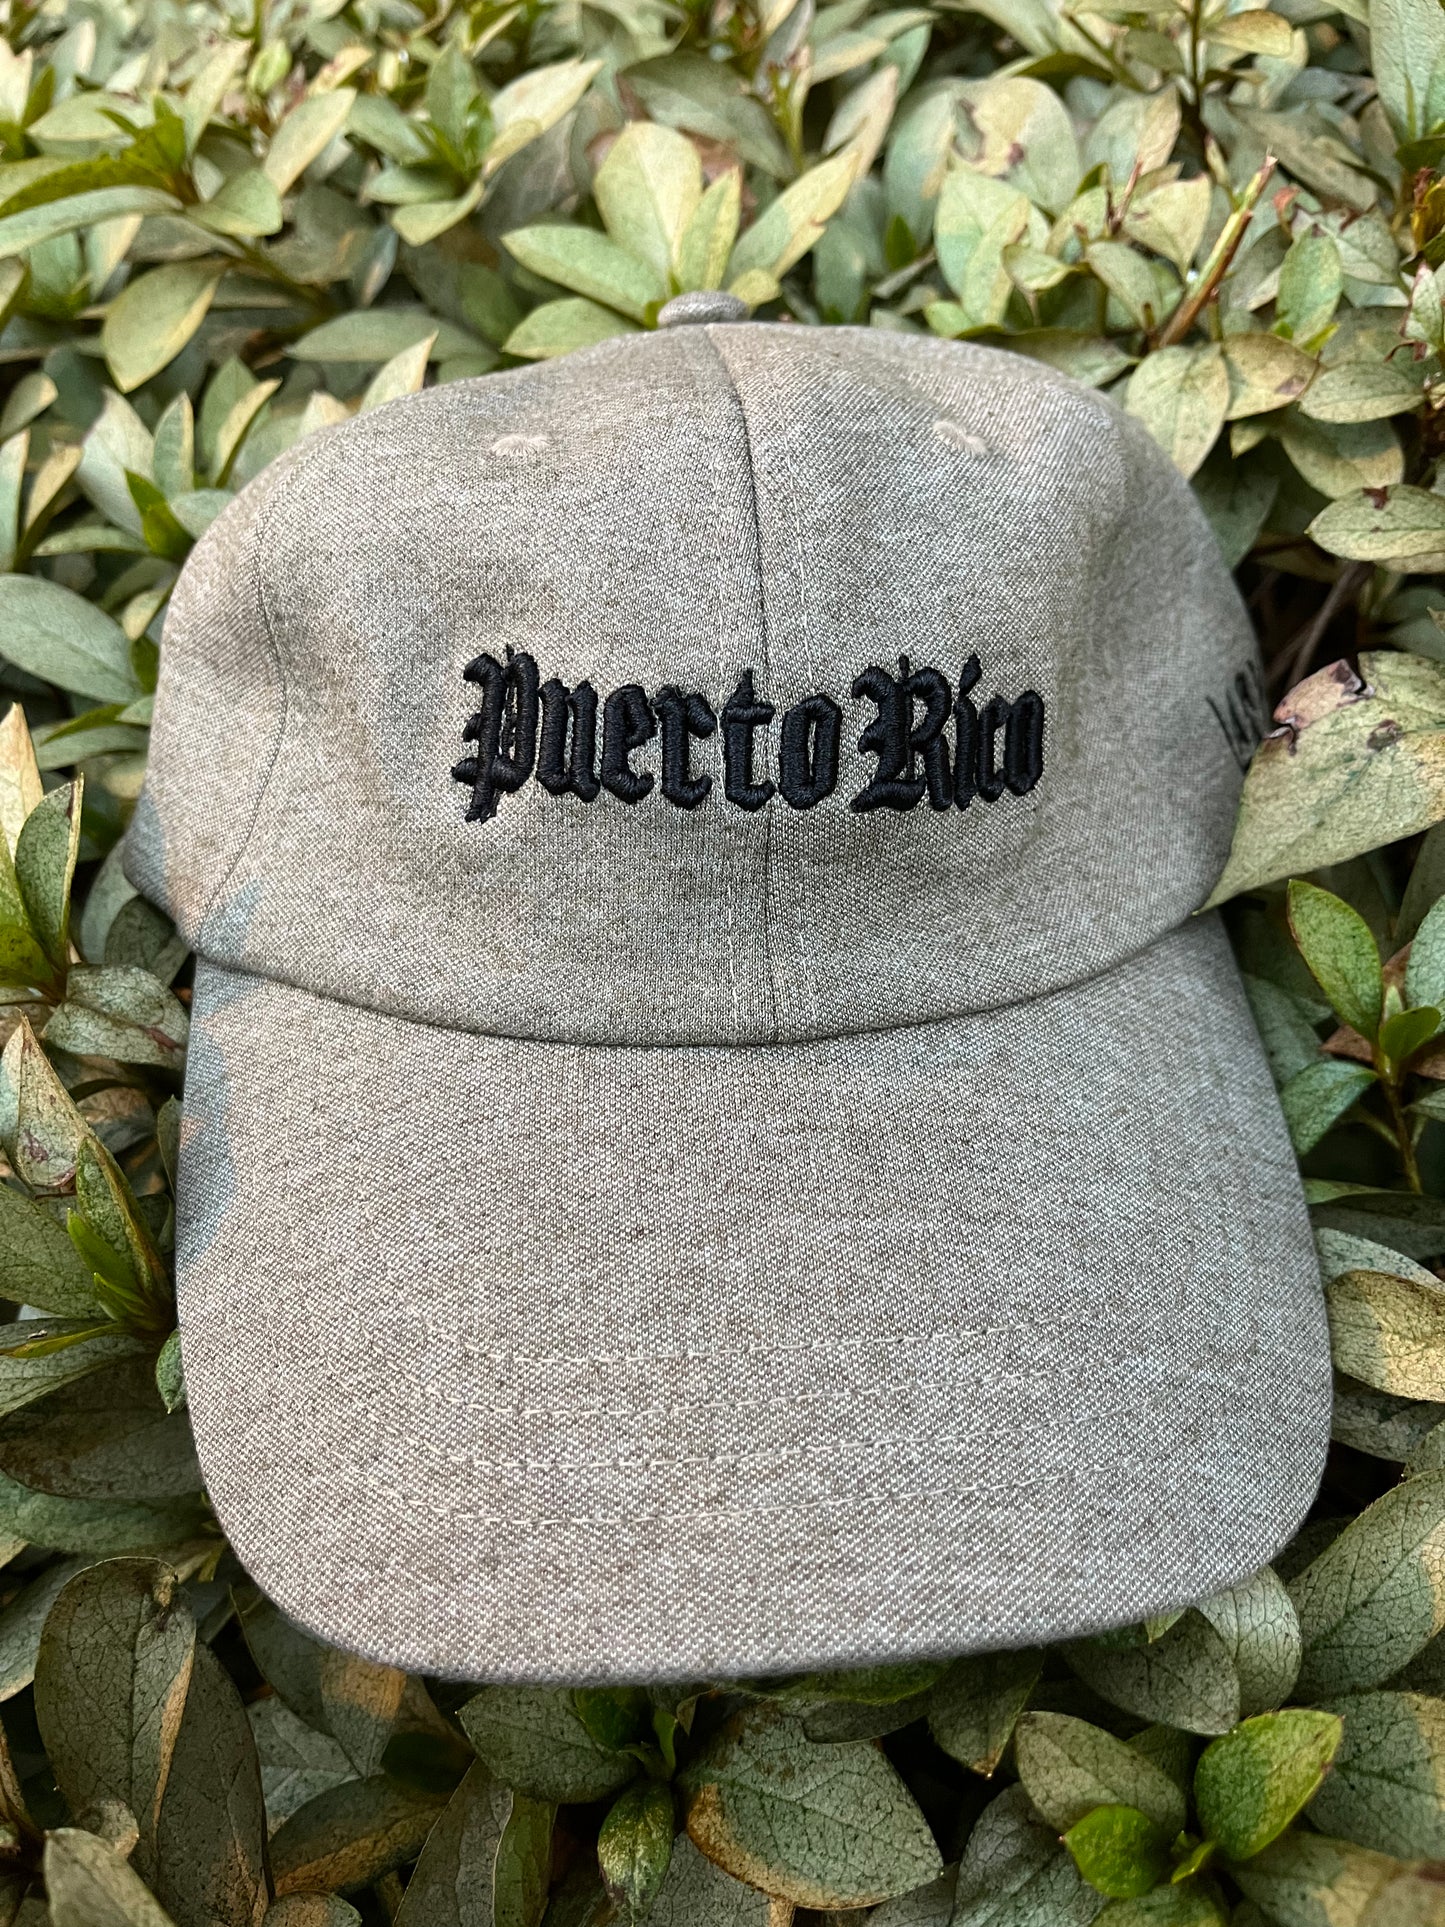 Puerto Rico Dad Hat